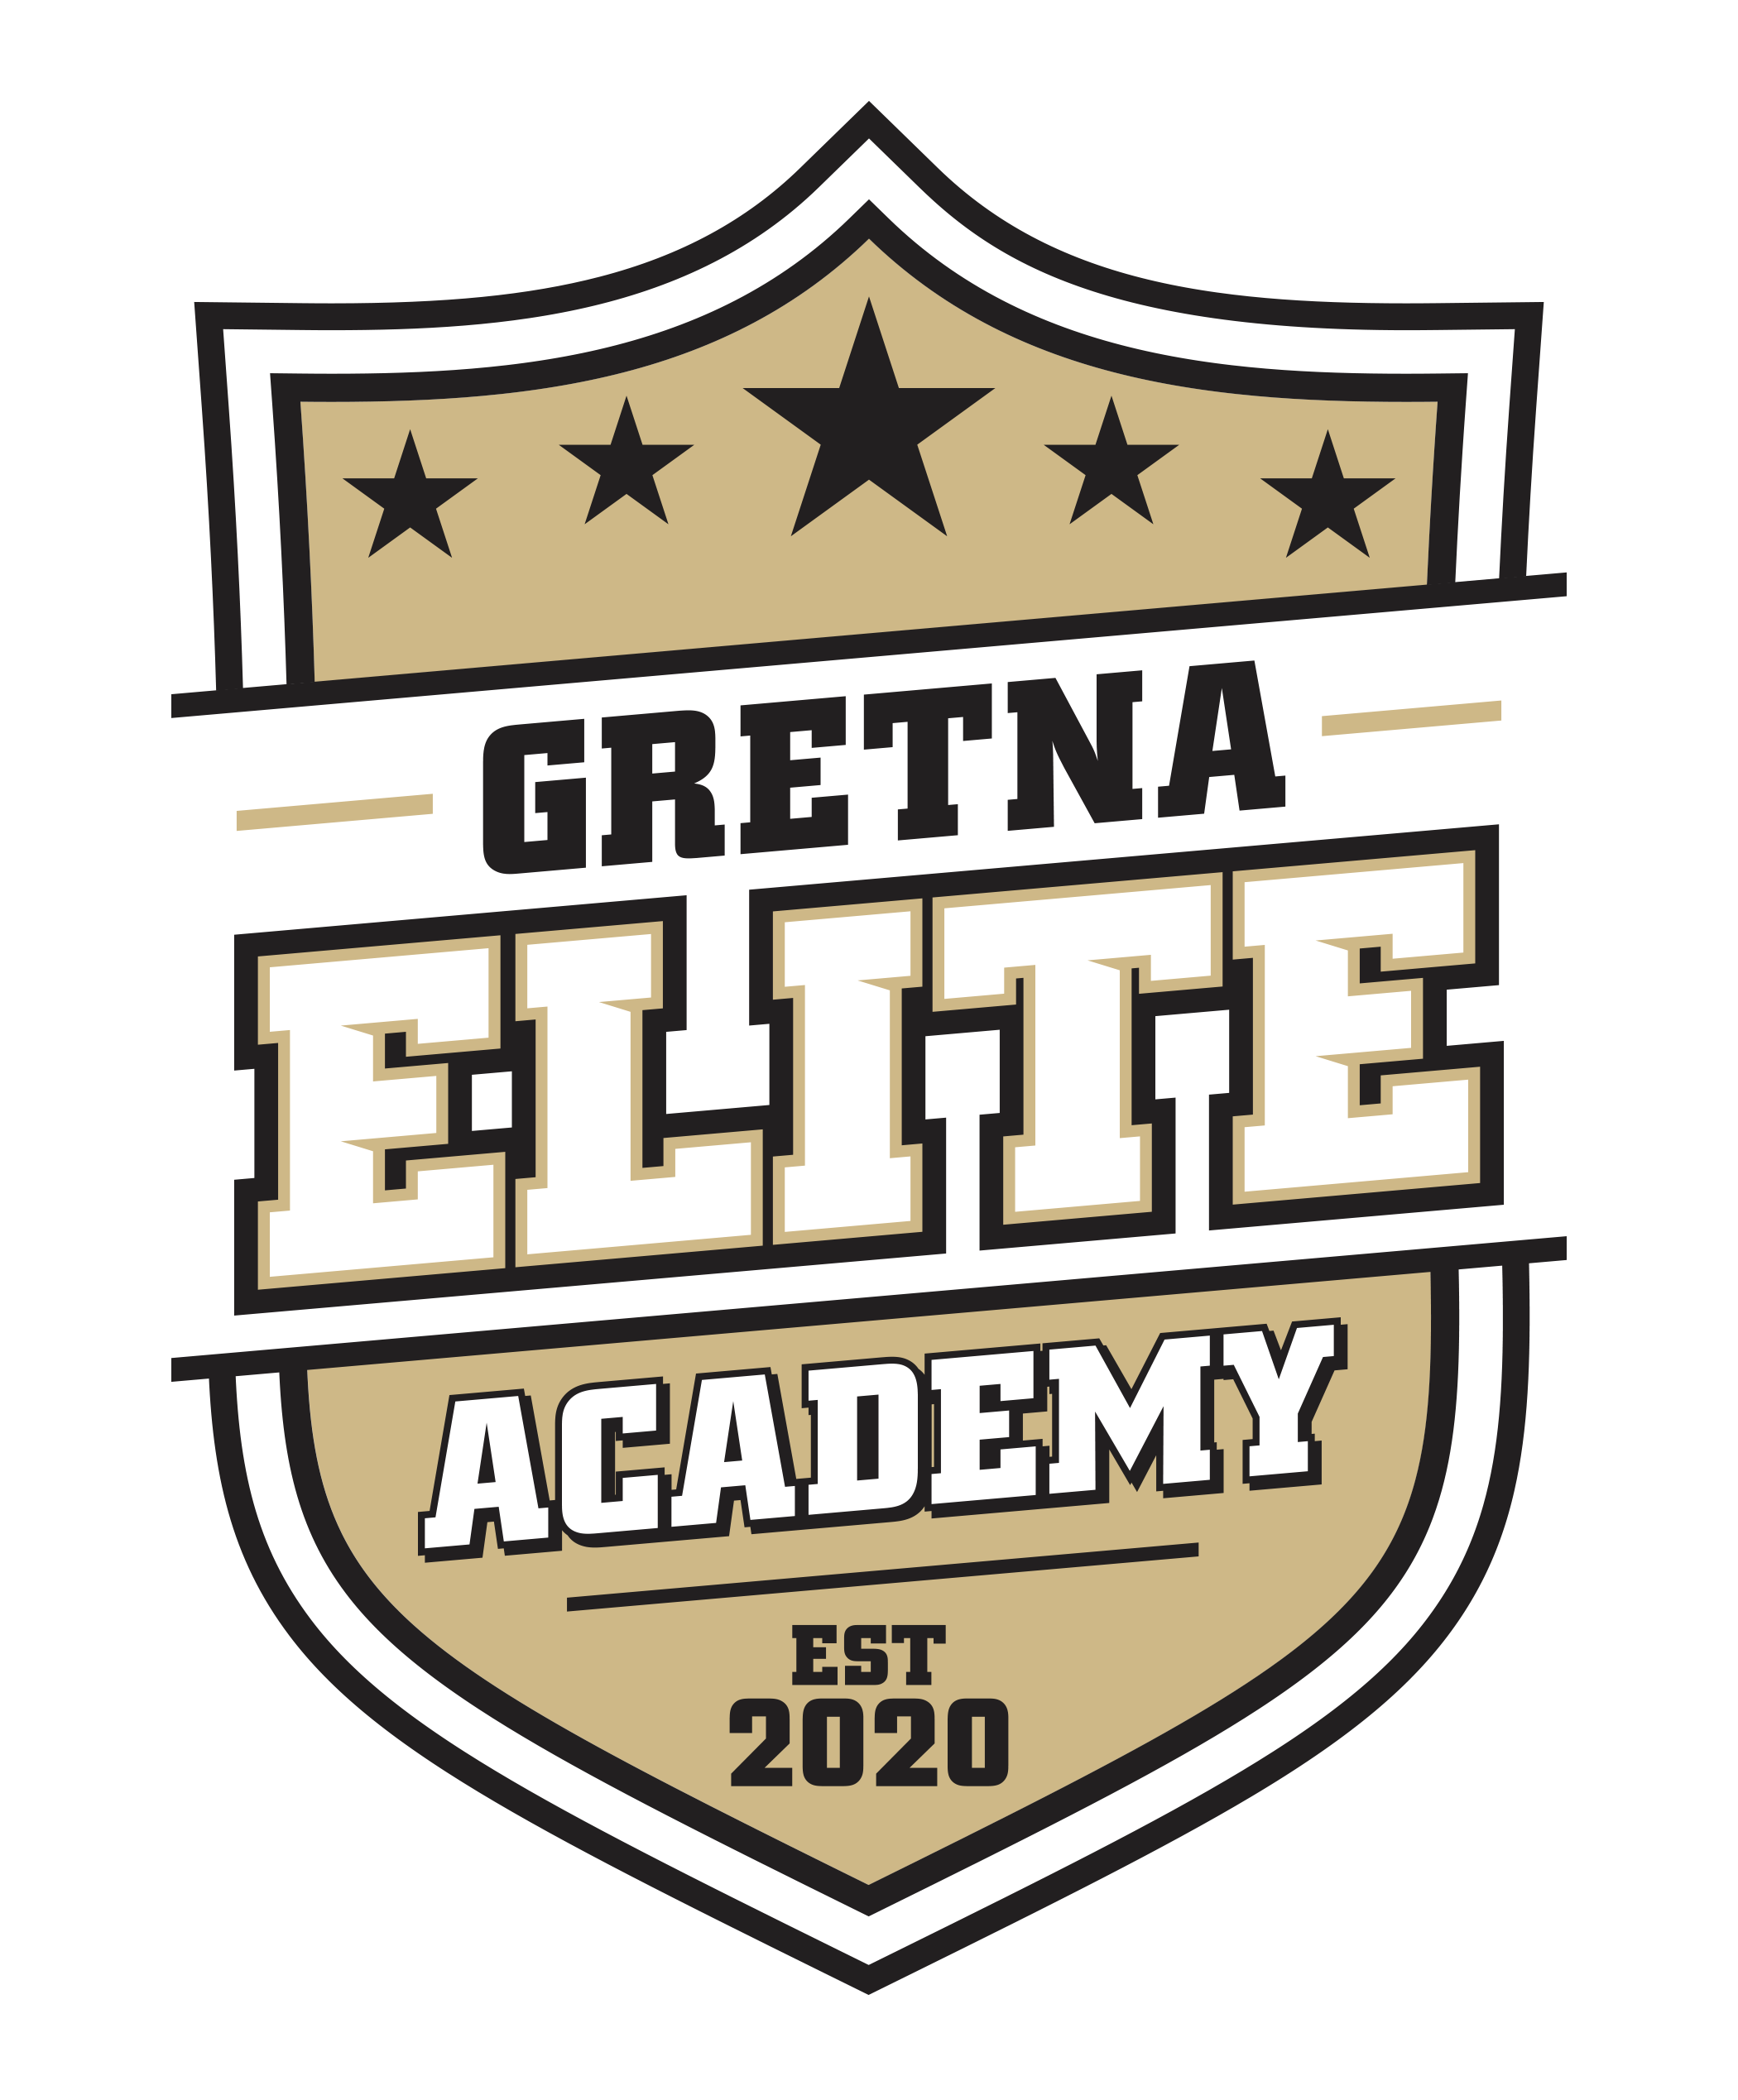 Boys Program Joins Ecnl Gretna Elite Academy